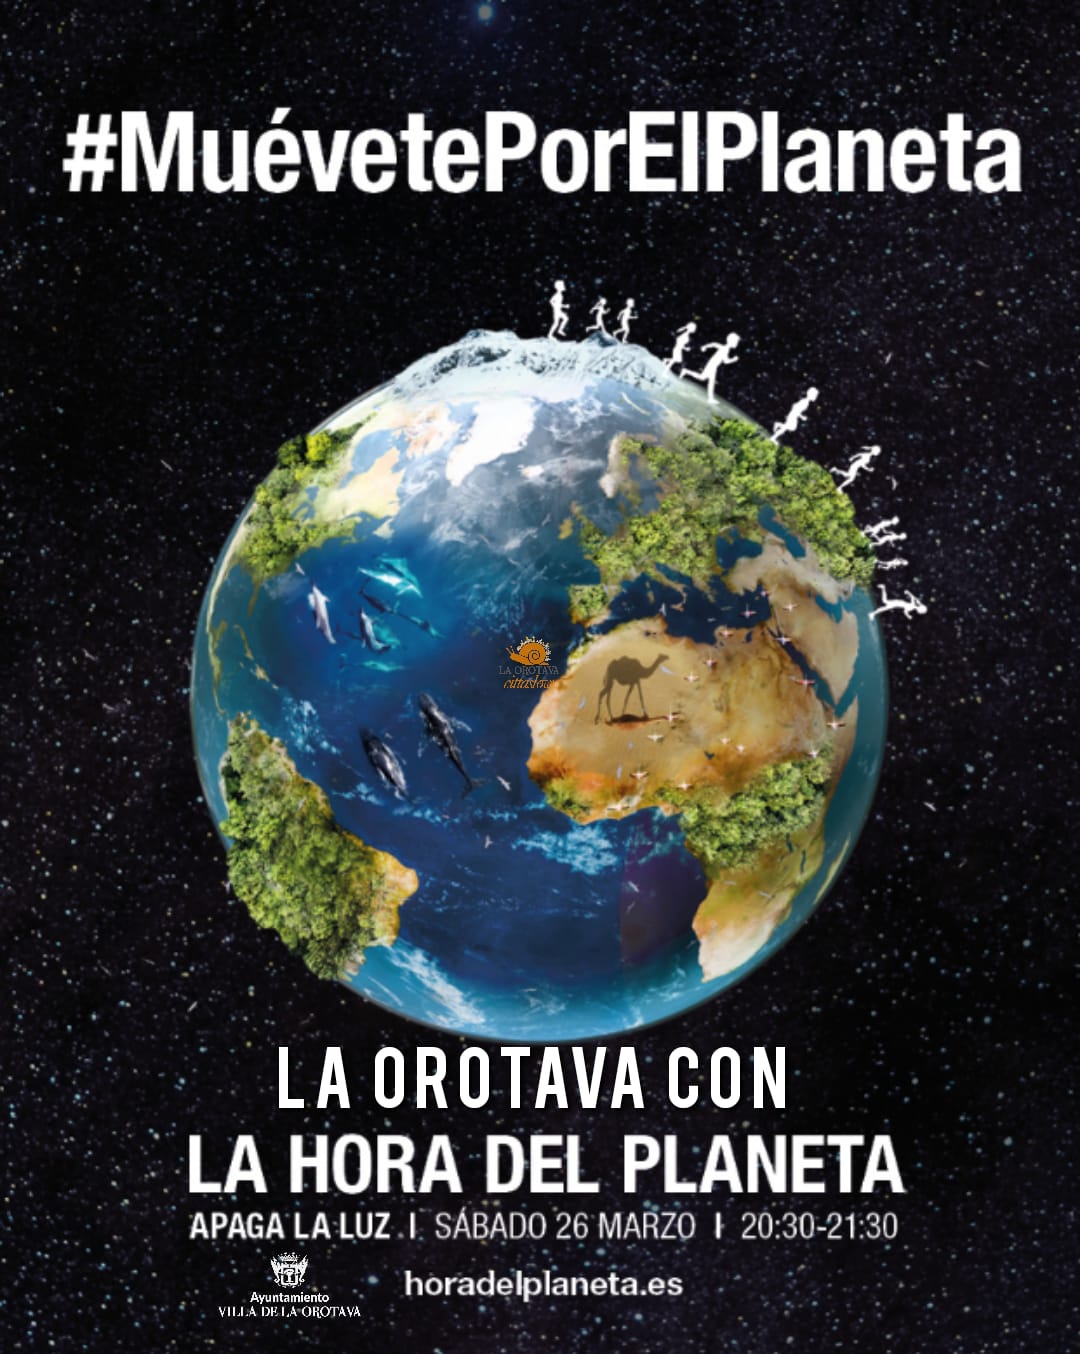 Bajo el lema #MuevétePorElPlaneta en la #HoraDelPlaneta se promueve una serie de acciones para proteger y conectar con la naturaleza